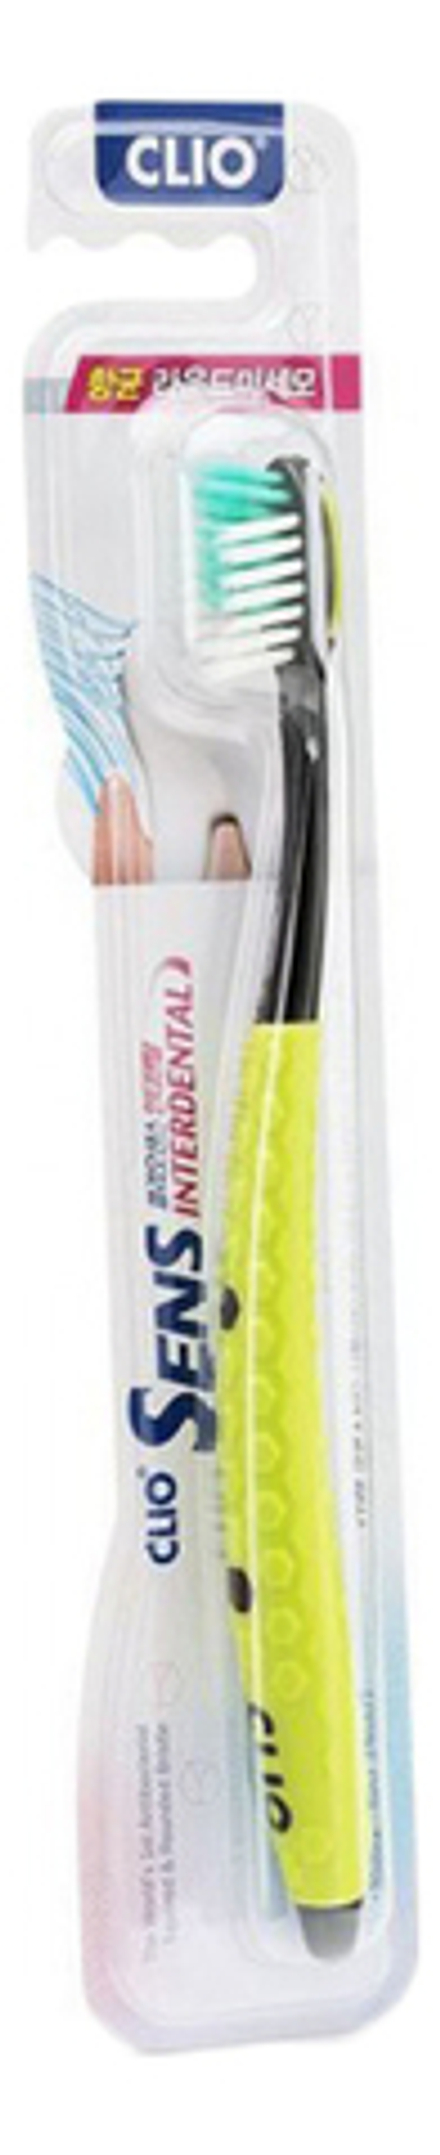 Мягкая зубная щетка CLIO Sens Interdental Antibacterial Ultrafine Toothbrush